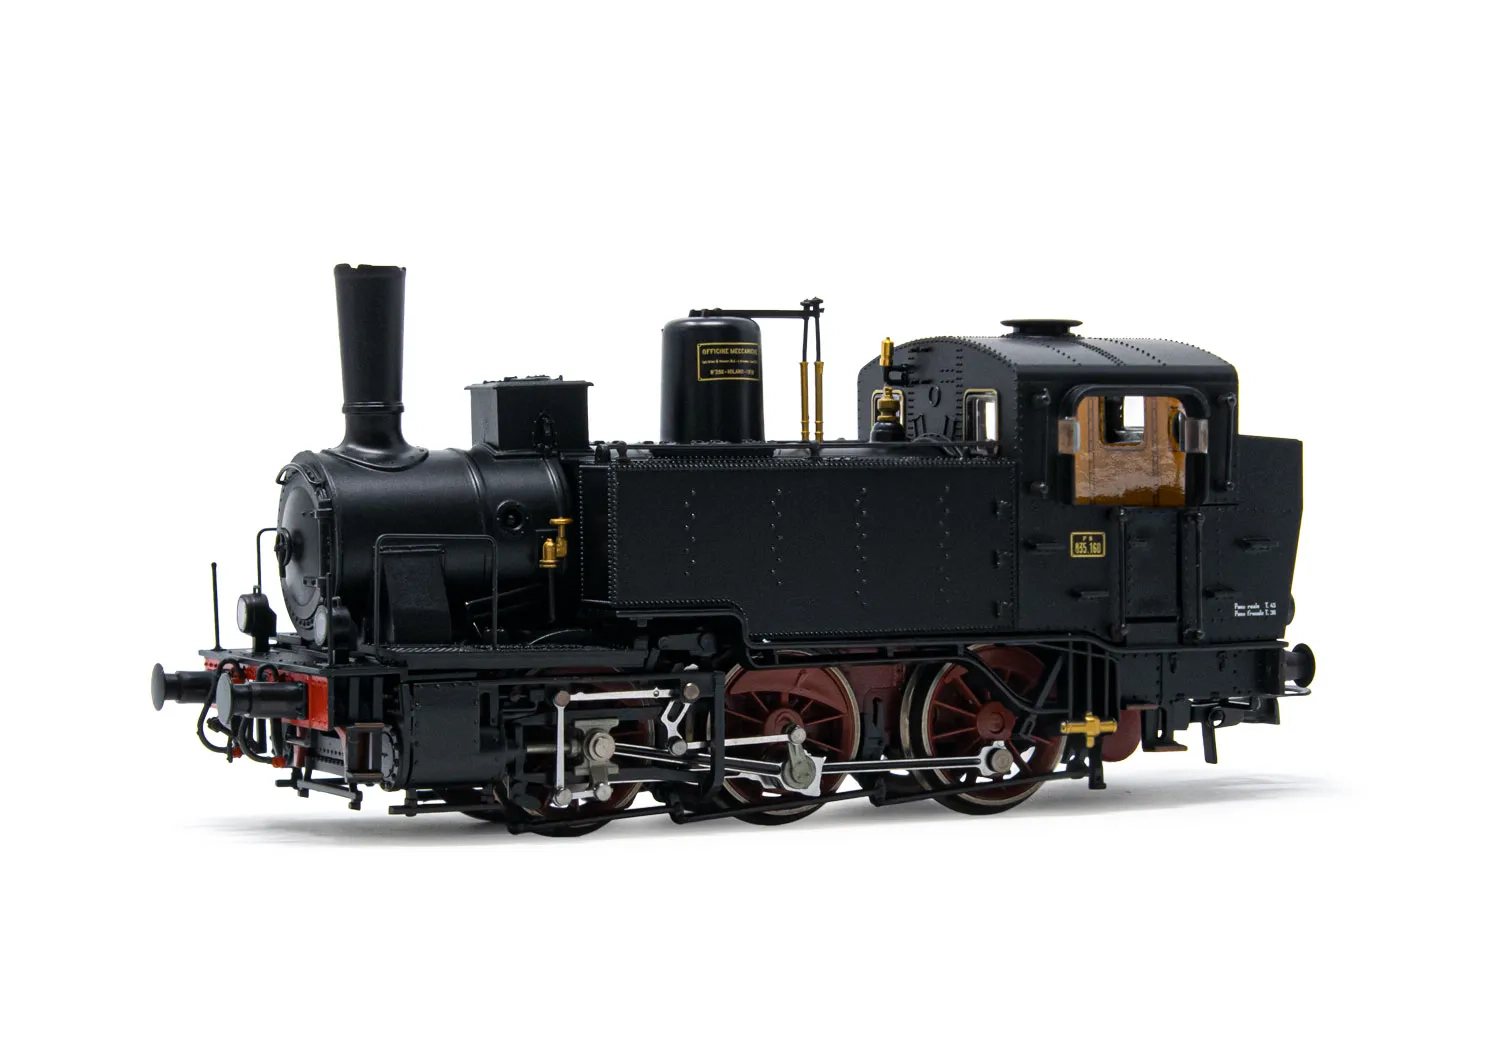 FS, Dampflokomotive Gr. 835, elektrische Lampen, kleine Westinghouse Pumpe, Ep. III-IV